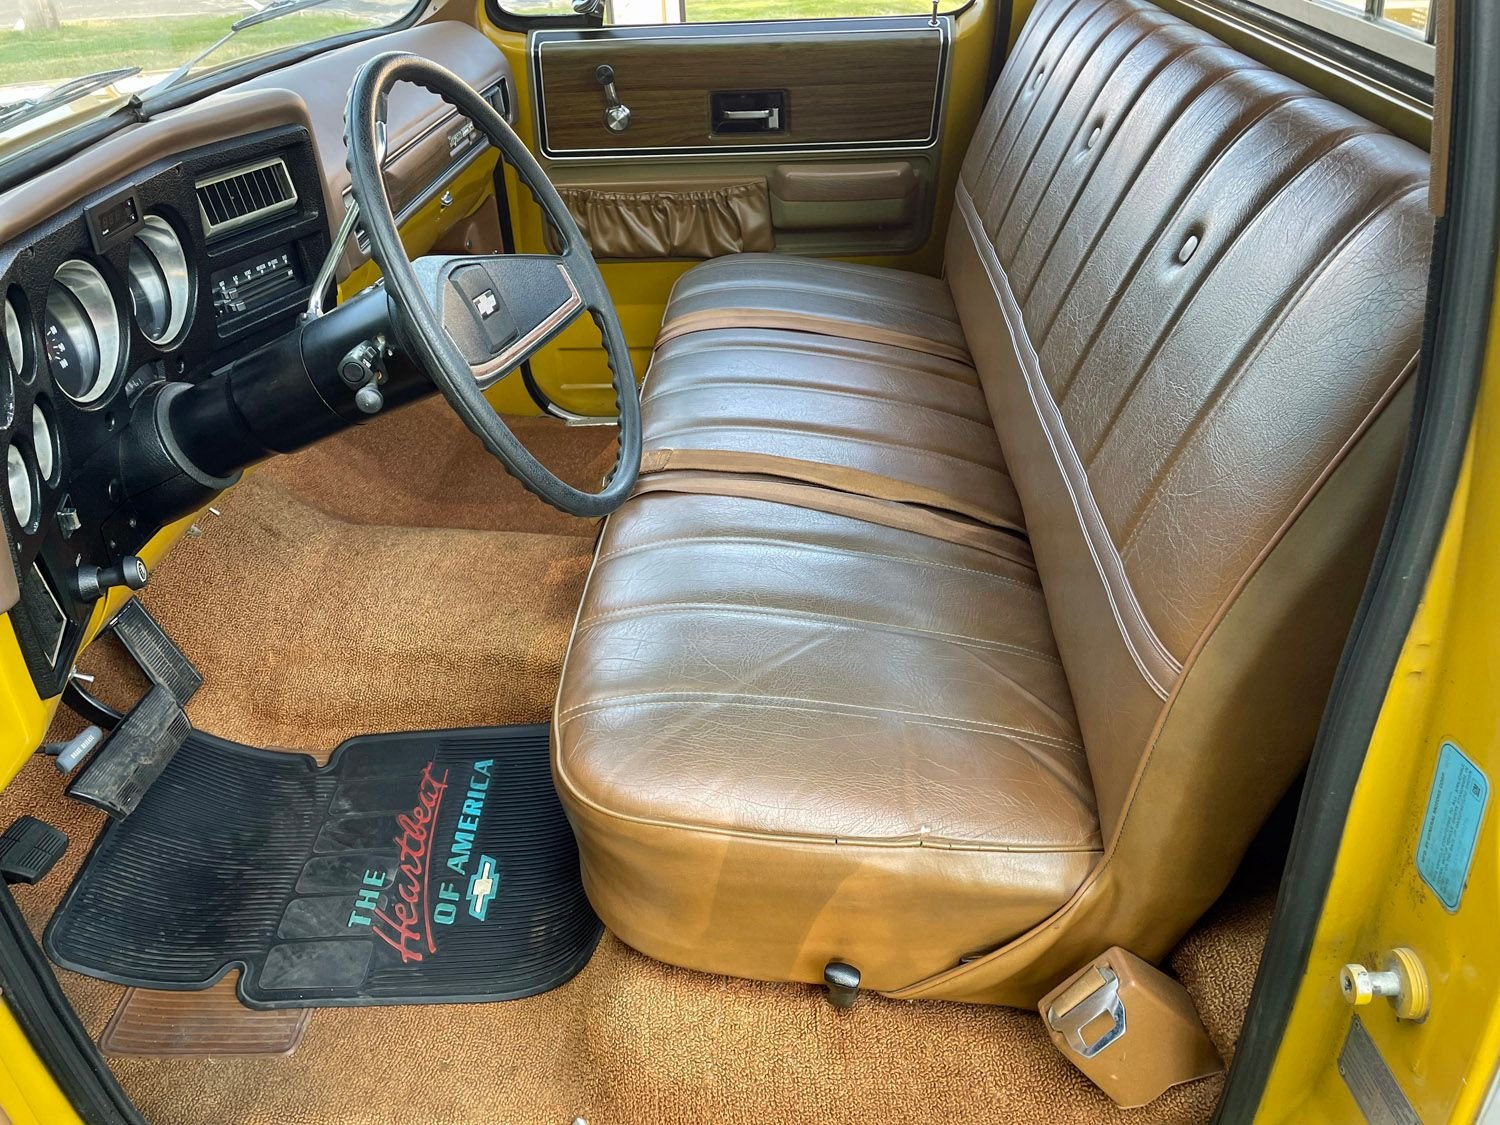 1973 Chevrolet C10